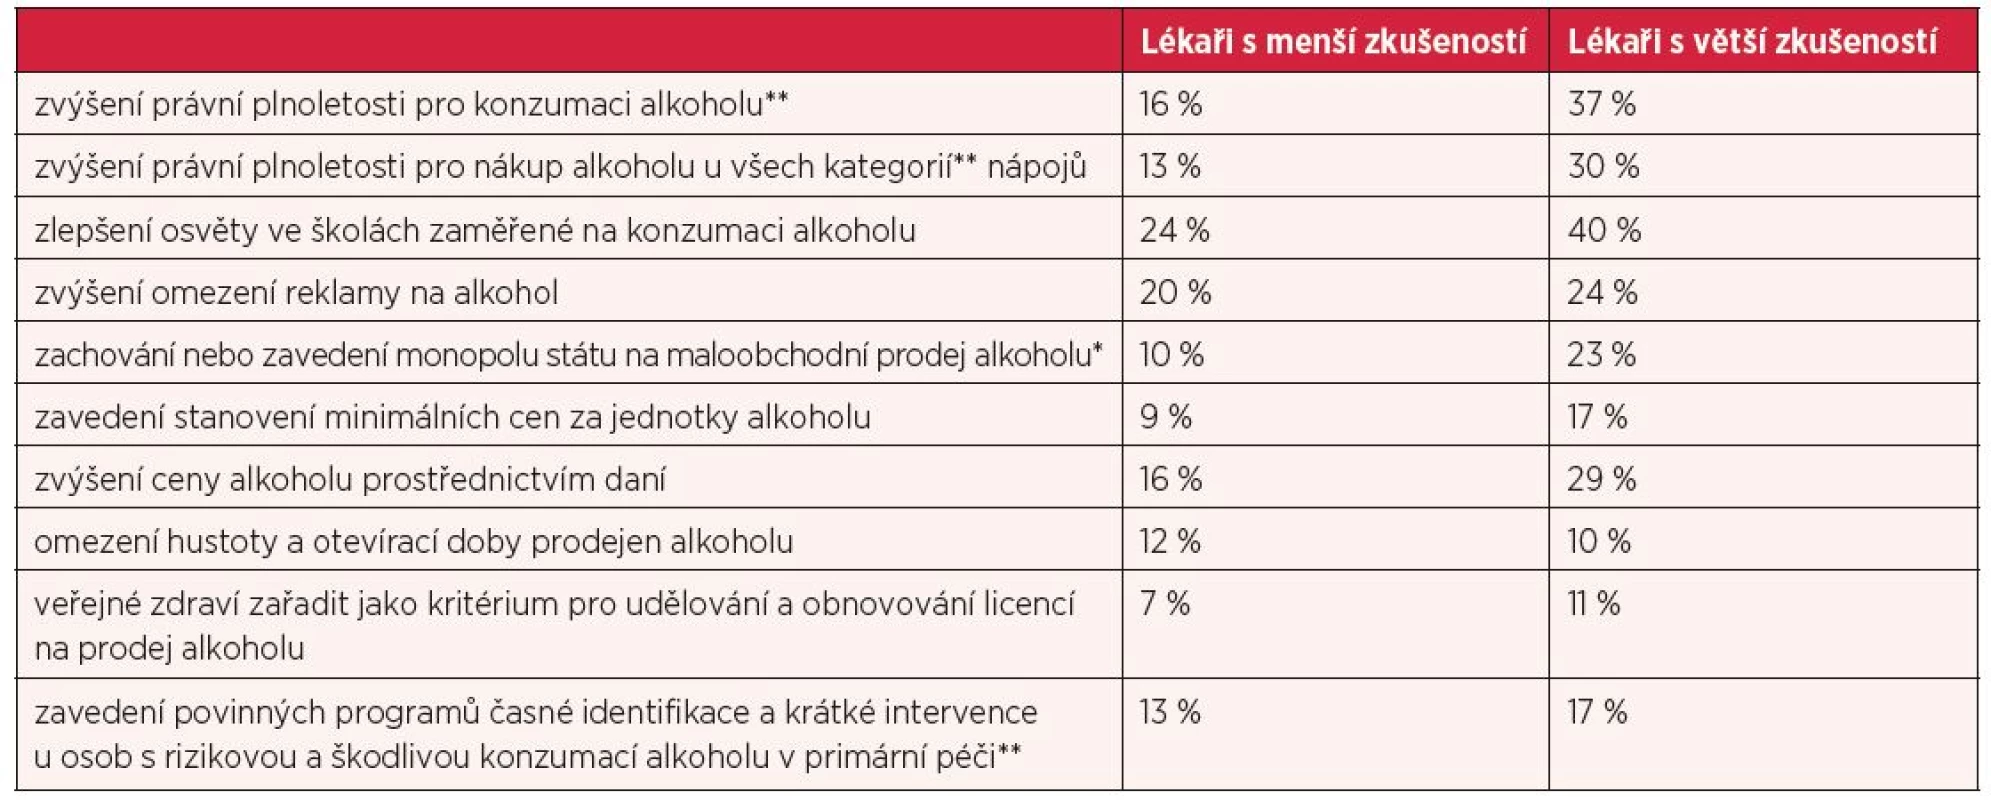 Názory lékařů na opatření, která by vedla k omezení problémů s alkoholem V České republice (procenta odpovědí v kategorii velmi účinné)